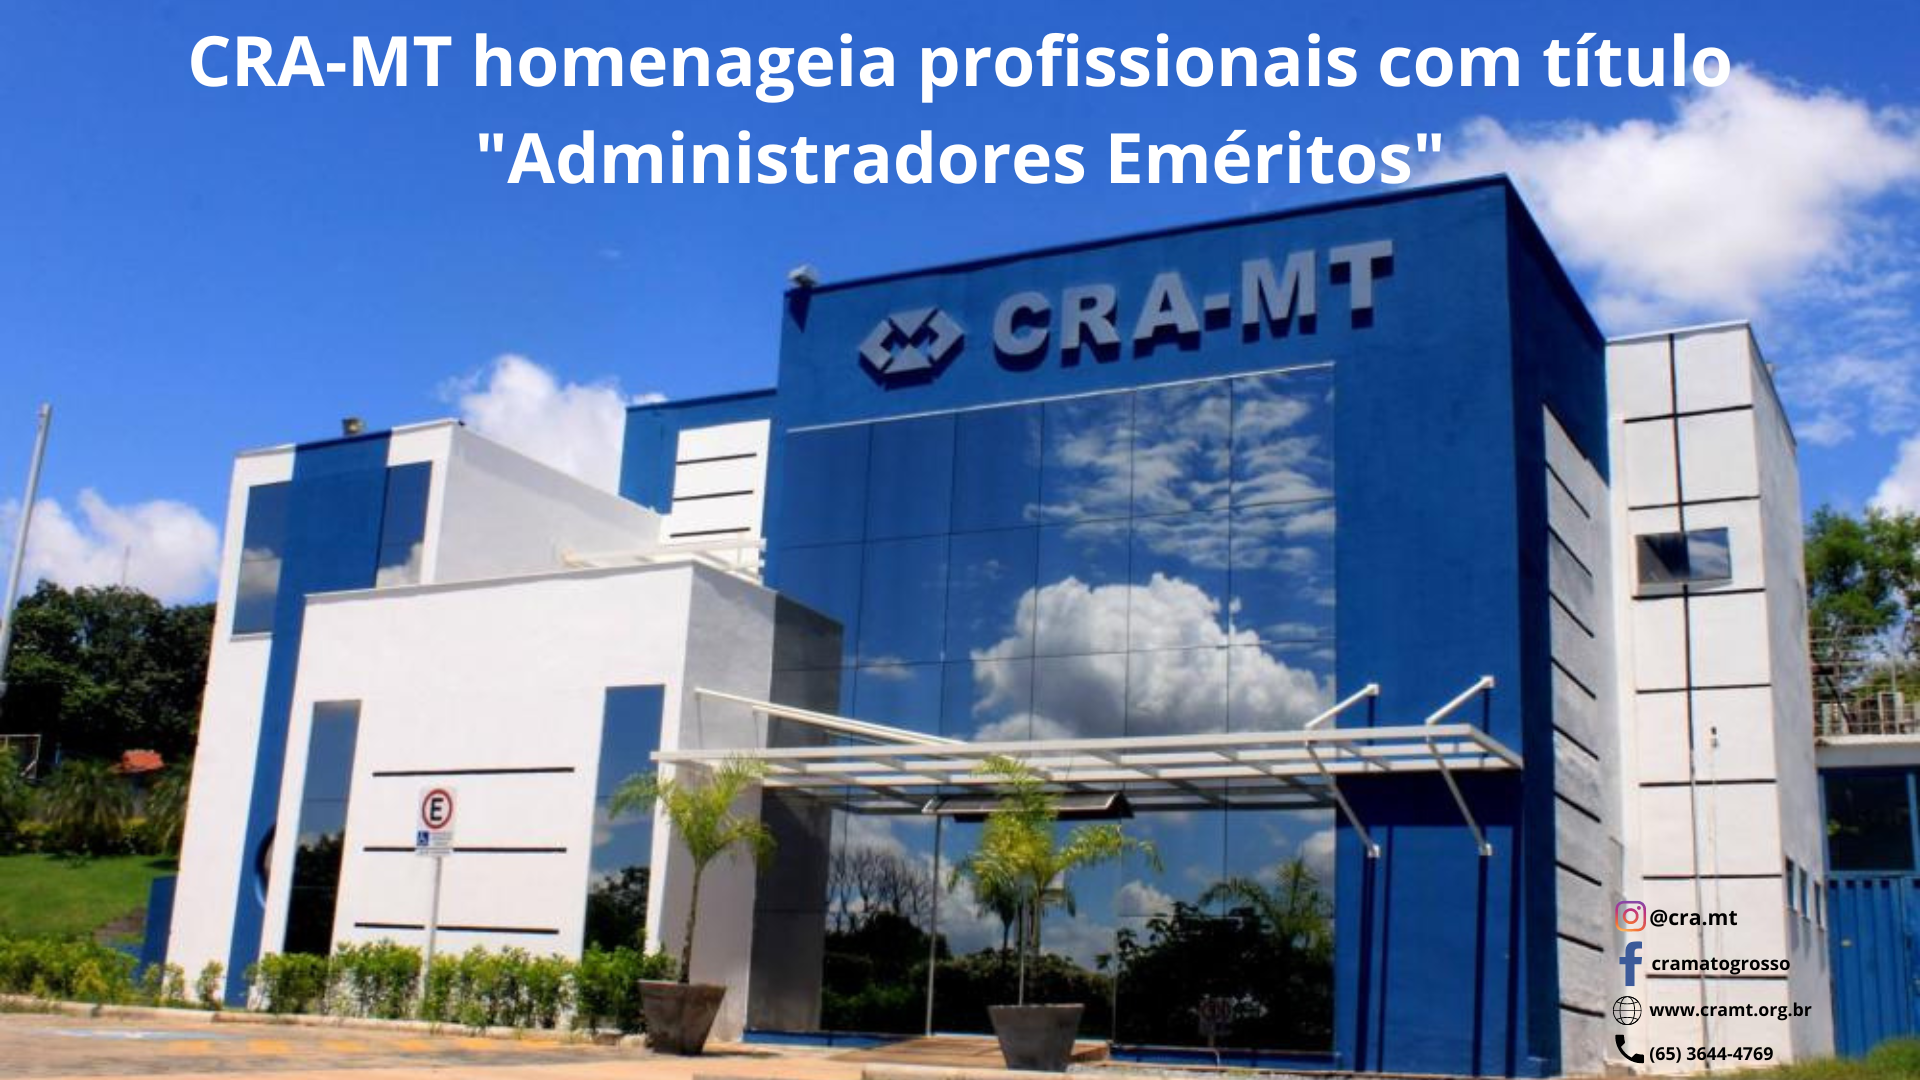 You are currently viewing CRA-MT homenageia profissionais com título “Administradores Eméritos”